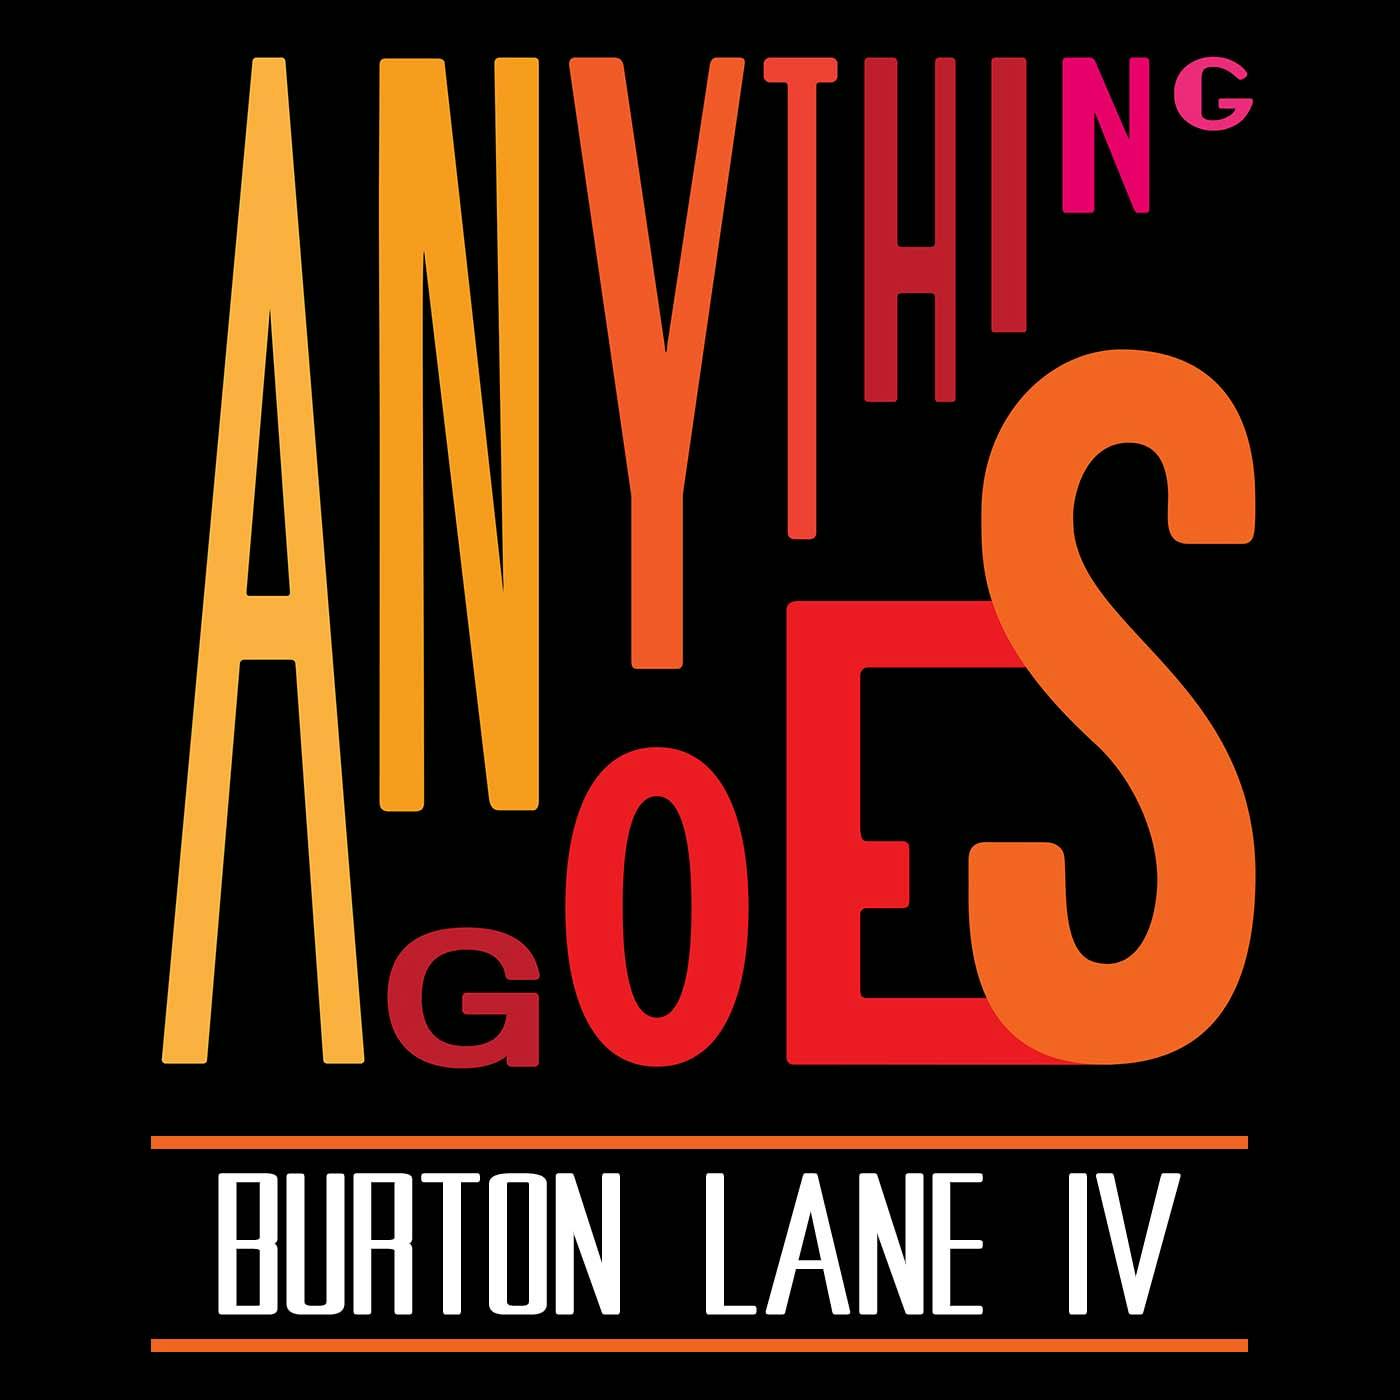 48 Burton Lane IV